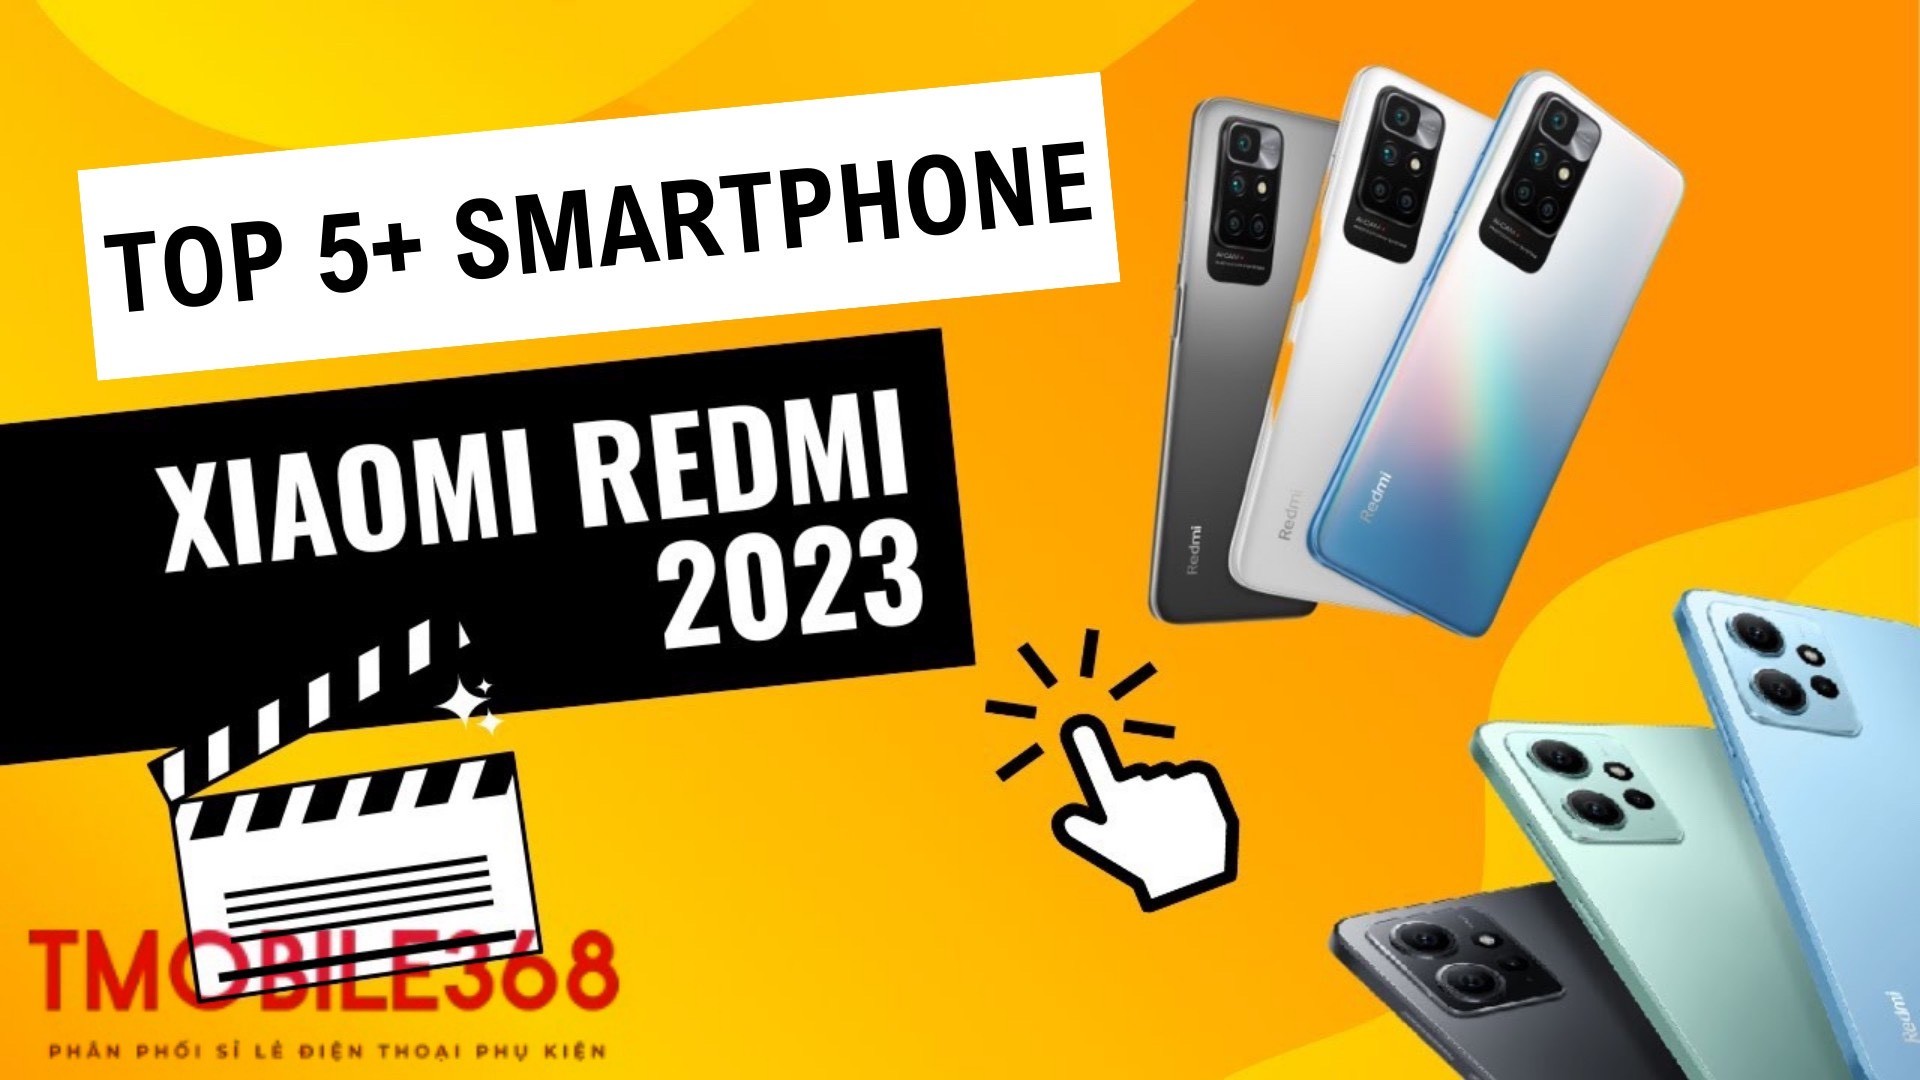 Top 5+ điện thoại Redmi được yêu thích năm 2023